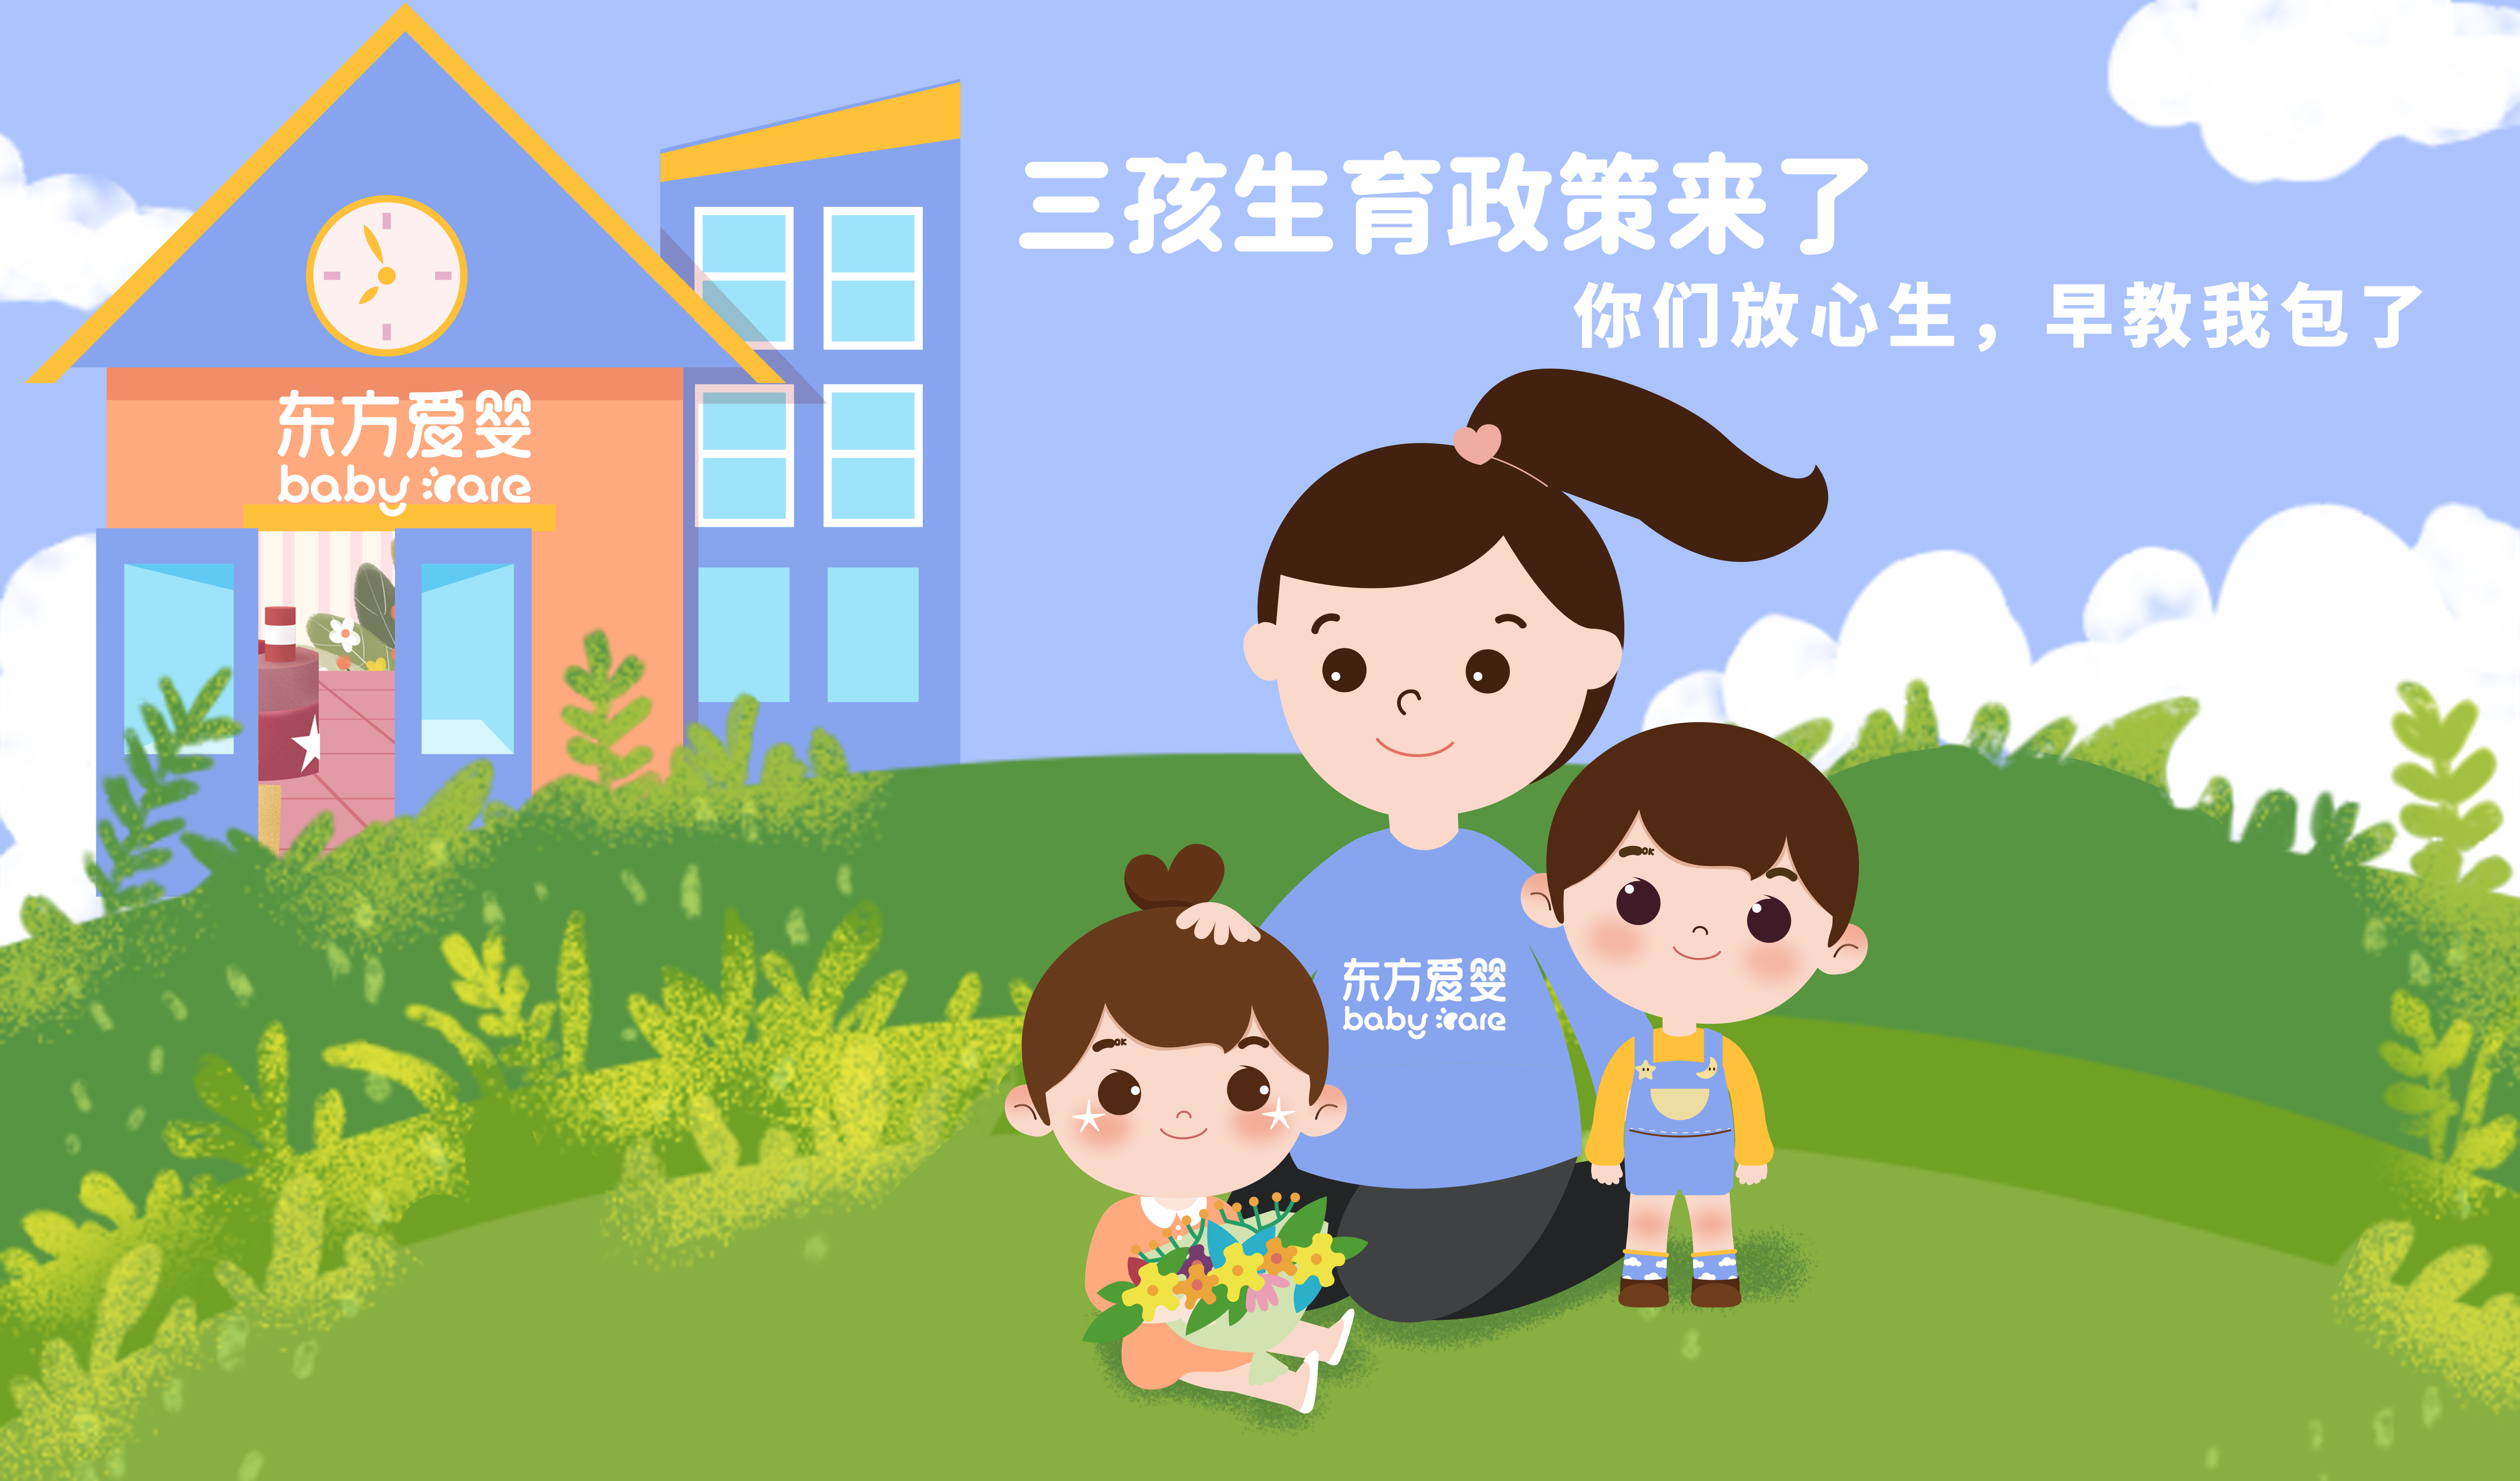 中共中央 国务院关于优化生育政策促进人口长期均衡发展的决定